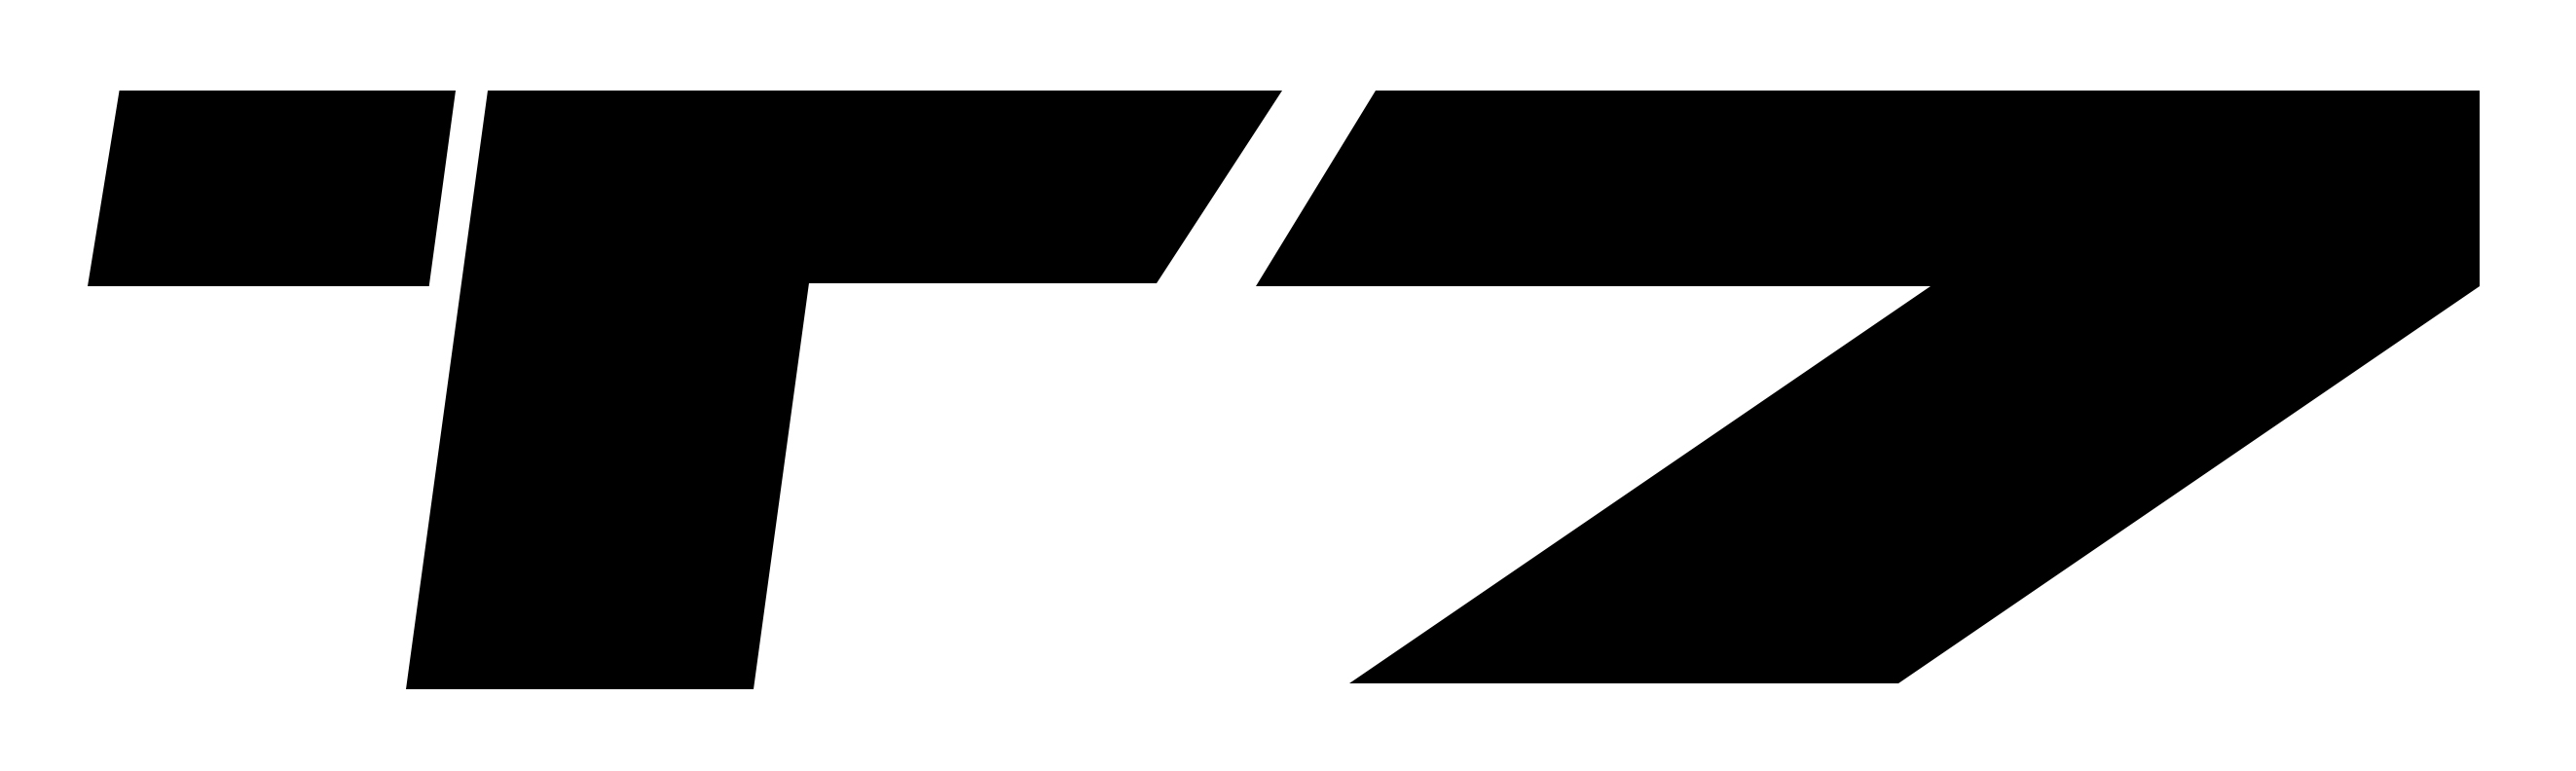 T7品牌标志LOGO